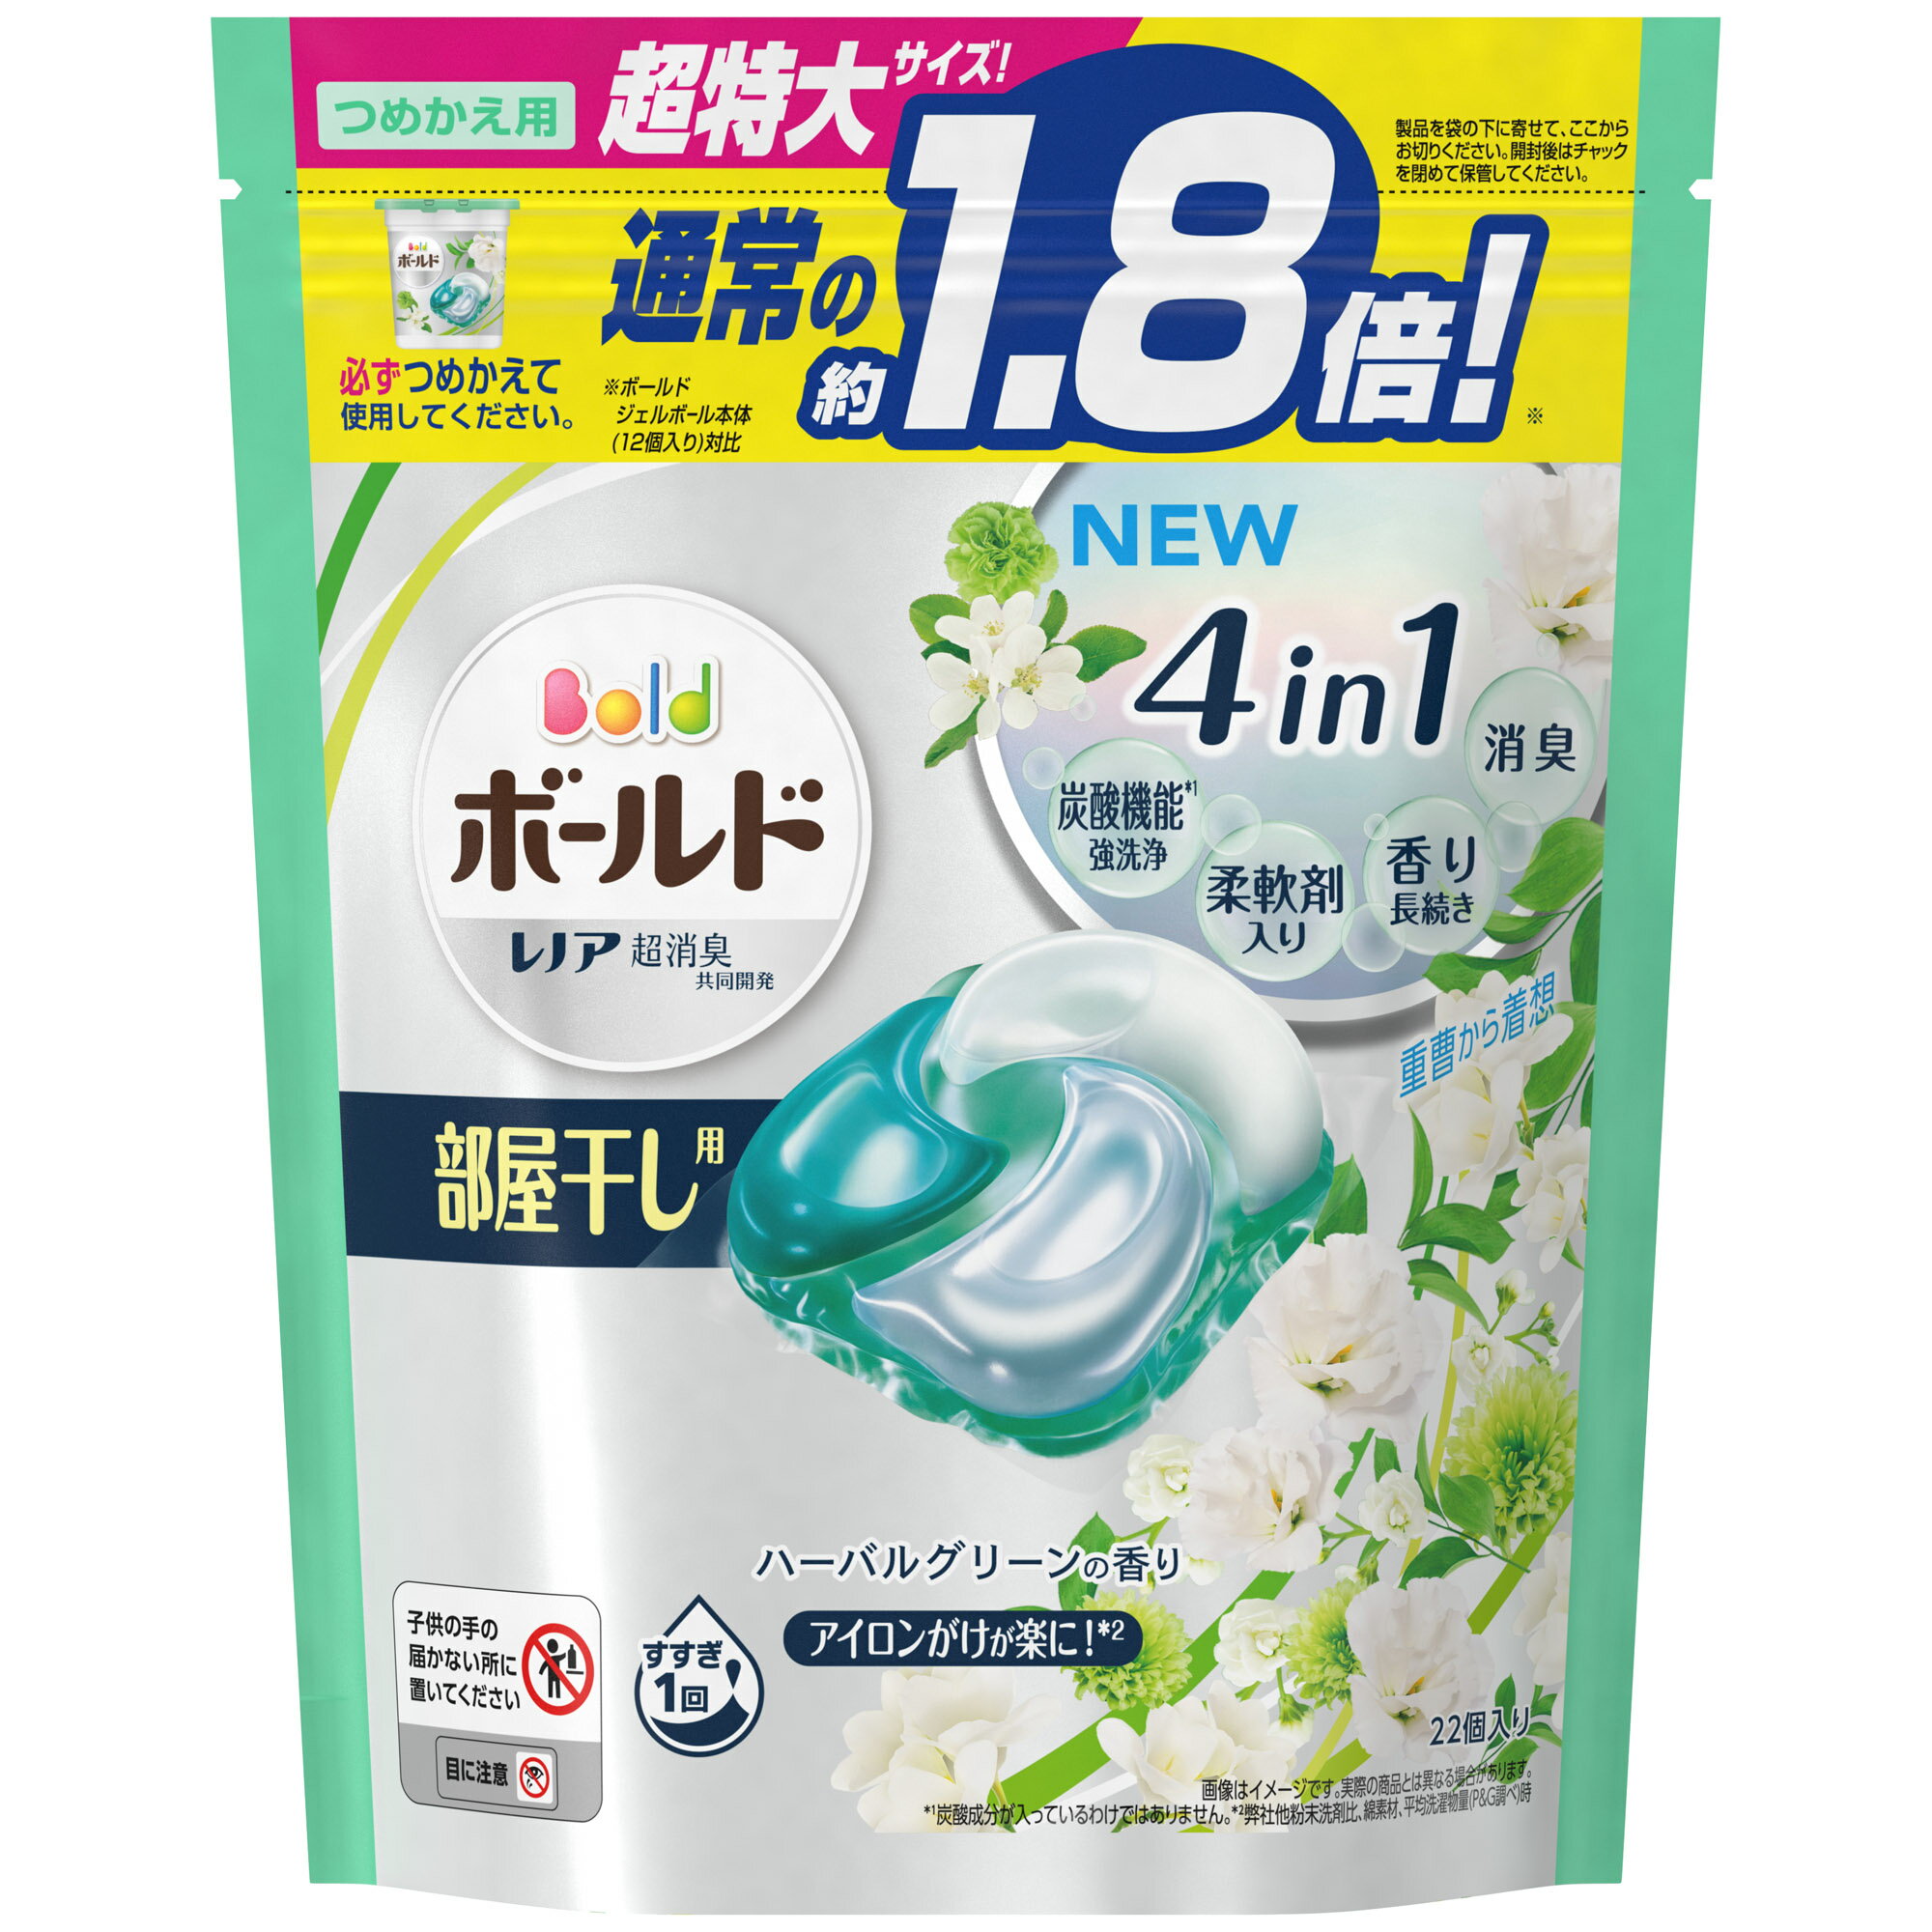 日本【P&G】 1.8倍BOLD 4D洗衣膠球 22顆入 淺綠-草本葉香